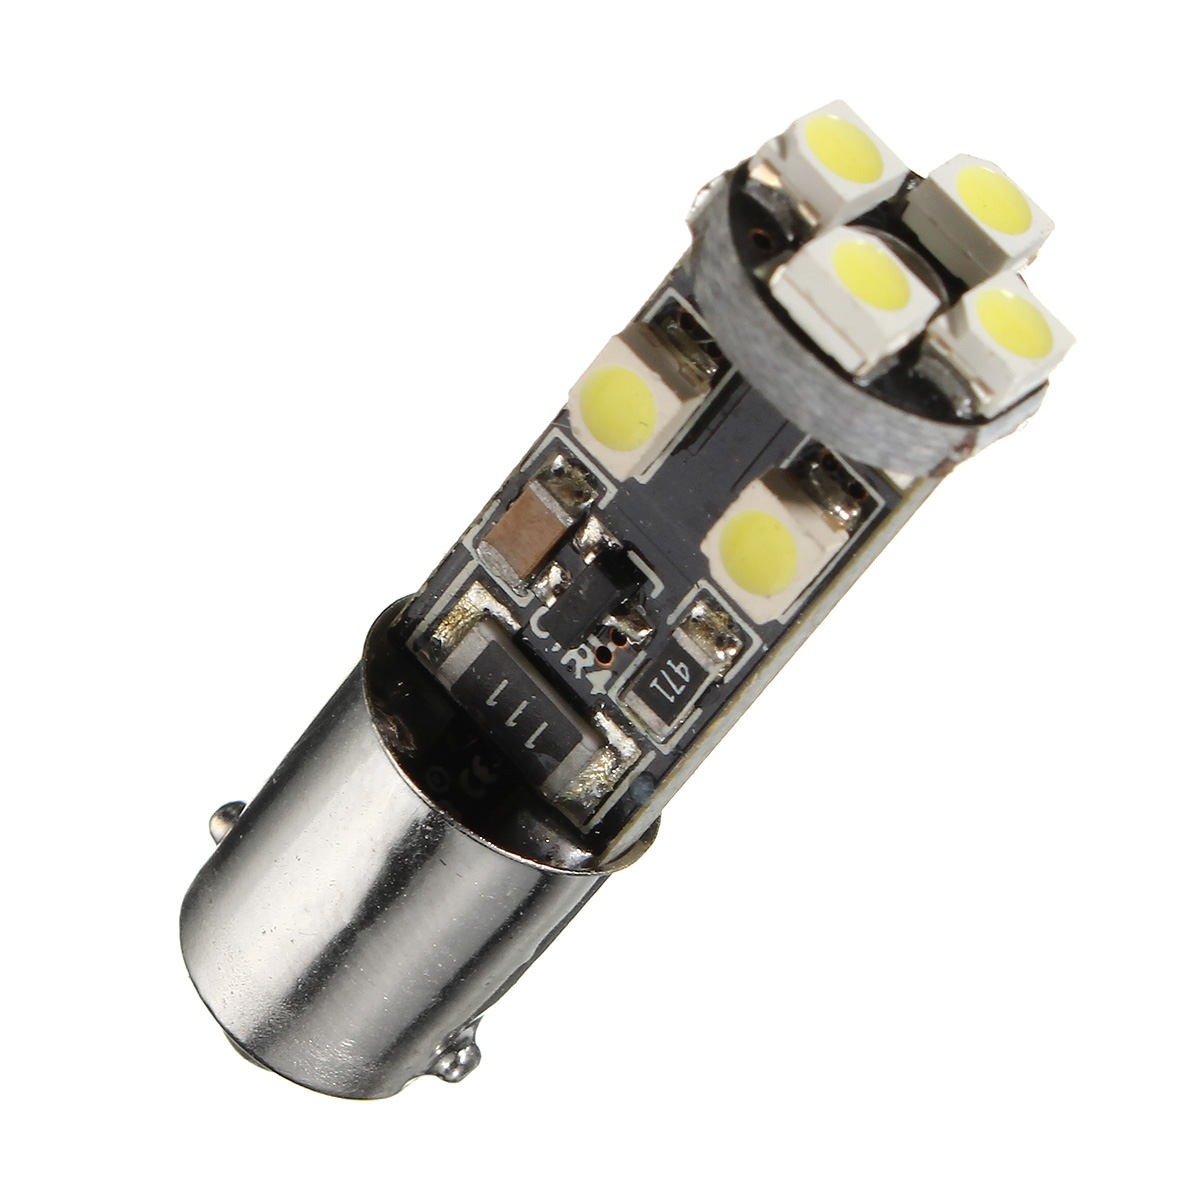 

8-SMD LED BA9S 180 градусов Авто Подсветка панели приборов в салоне Ошибка Ошибка указателя поворота 12 В 2.5 Вт 6000 К